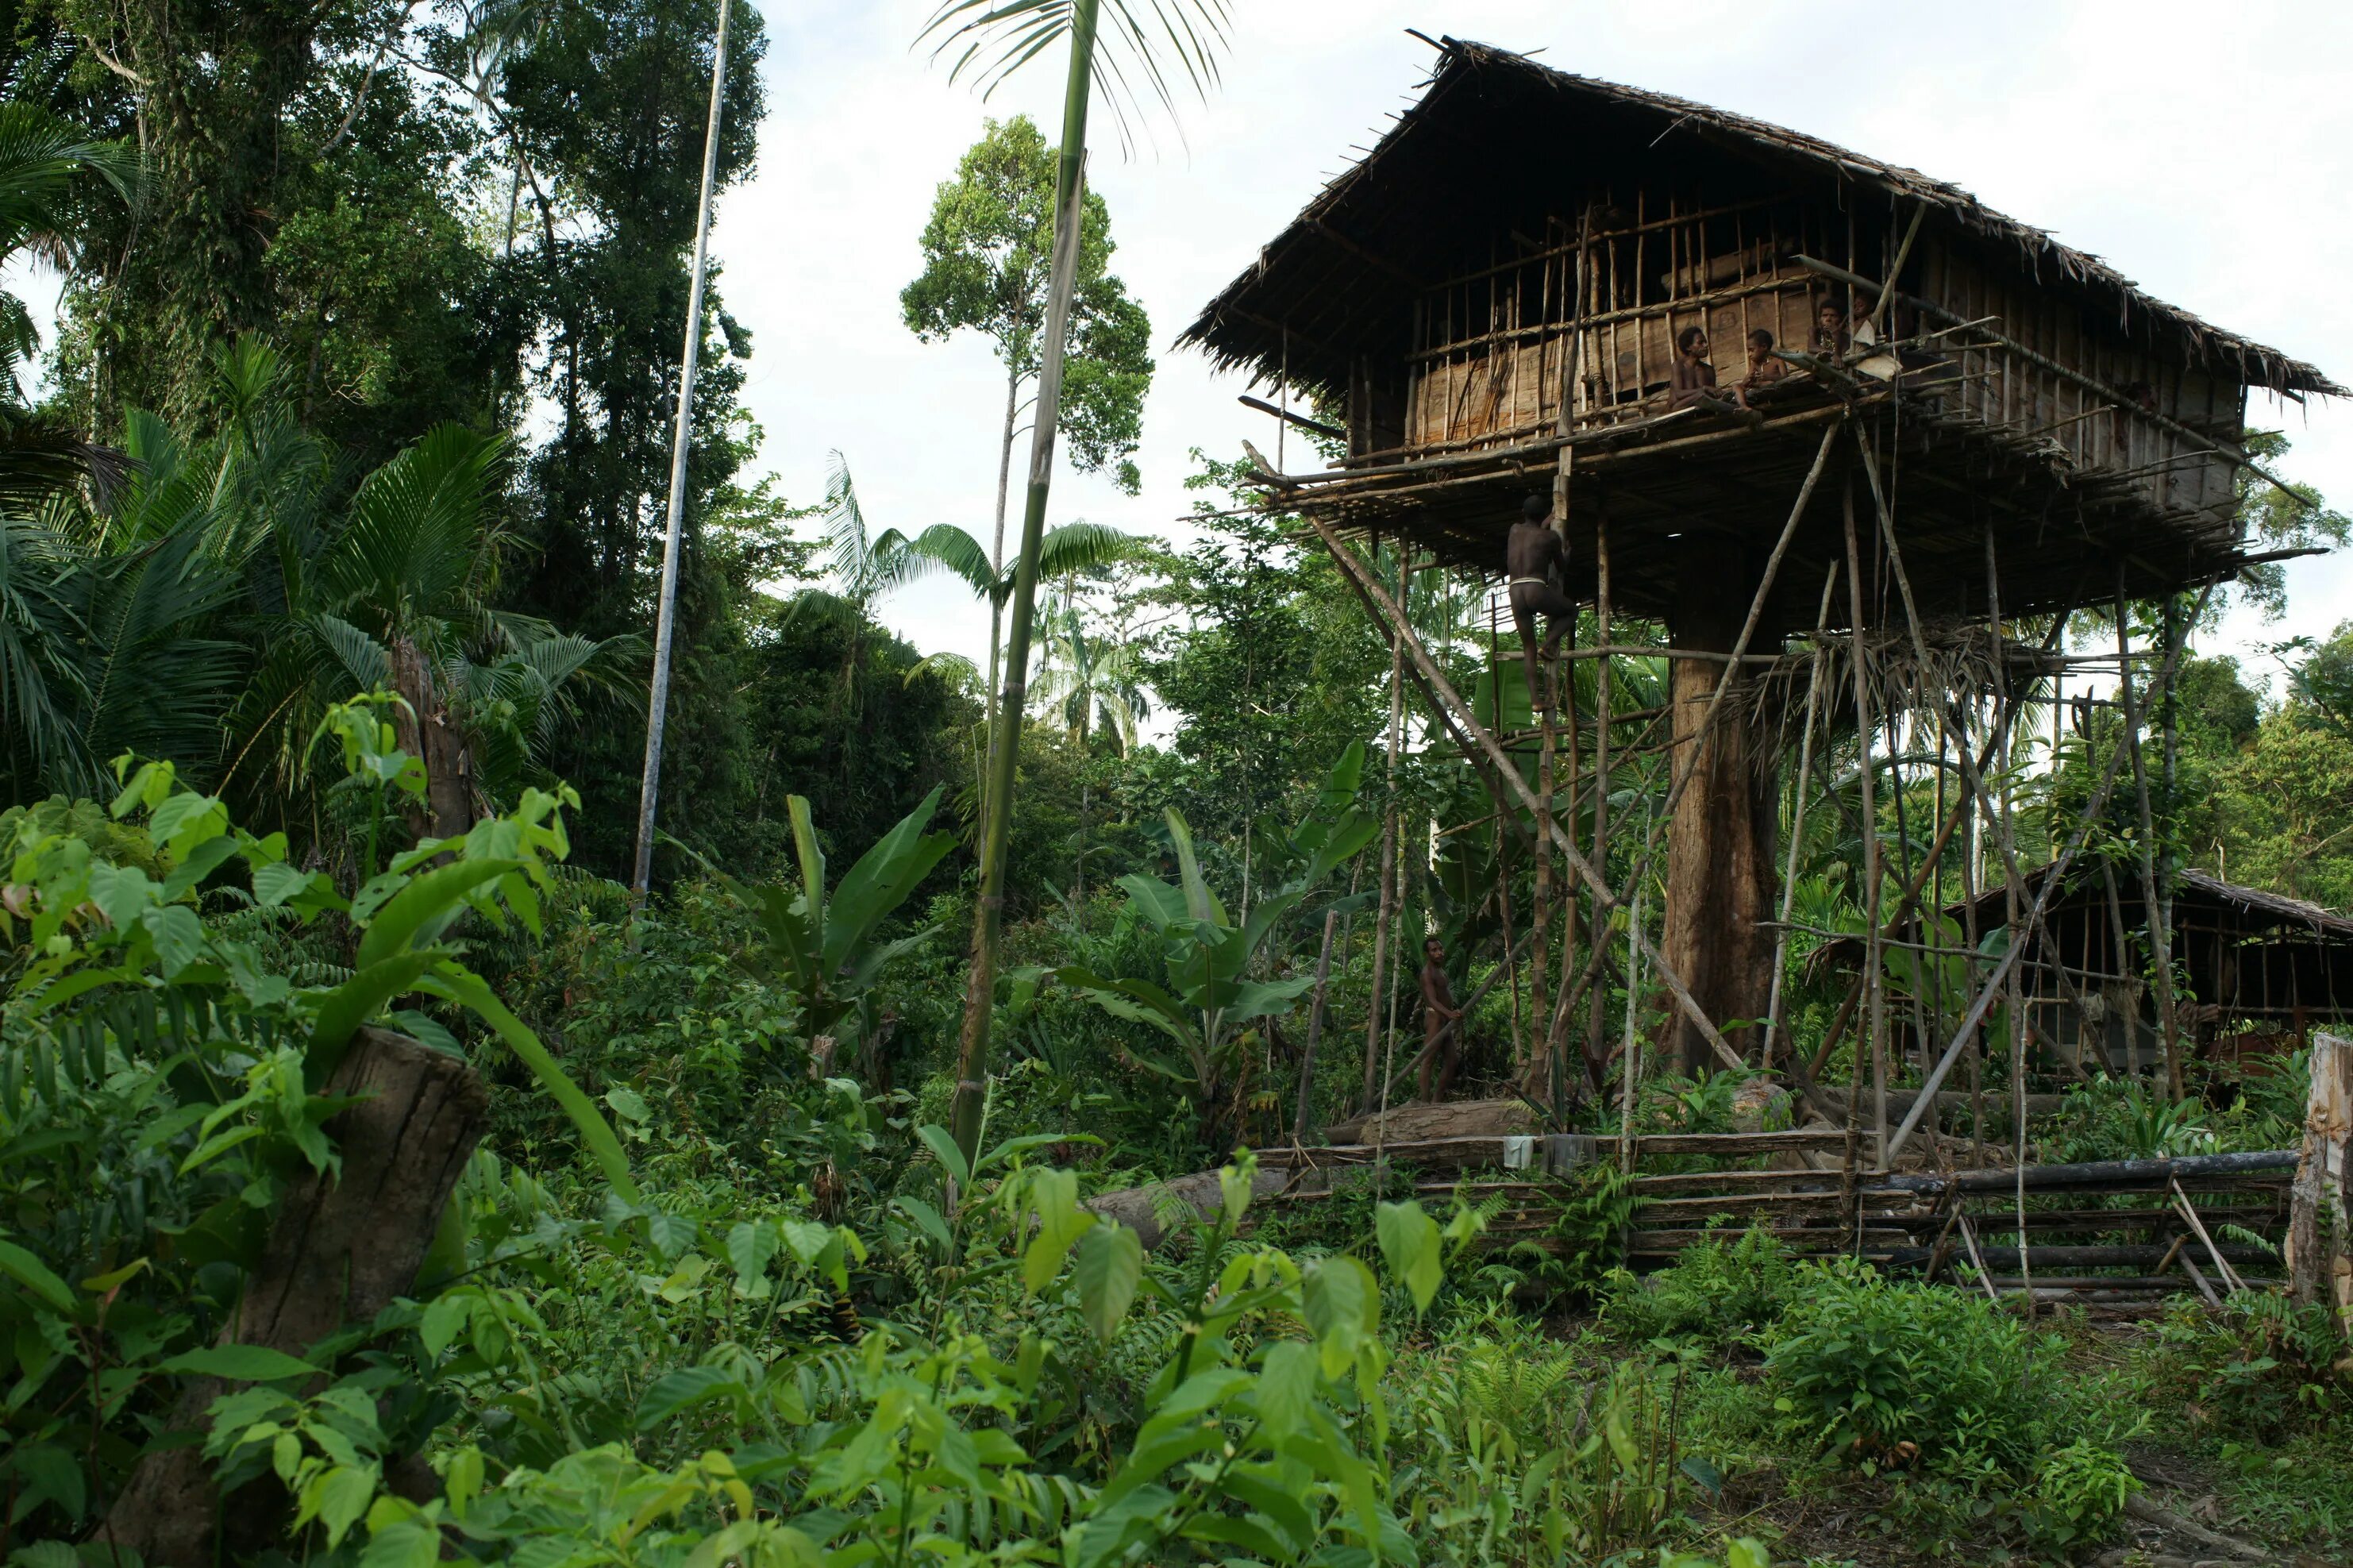 Люди живущие в экваториальном климате. Племя КОРОВАИ Папуа новая Гвинея. Племя КОРОВАИ Папуа новая Гвинея жилища на деревьях. Хижины новой Гвинеи. Жилища Короваев новая Гвинея.